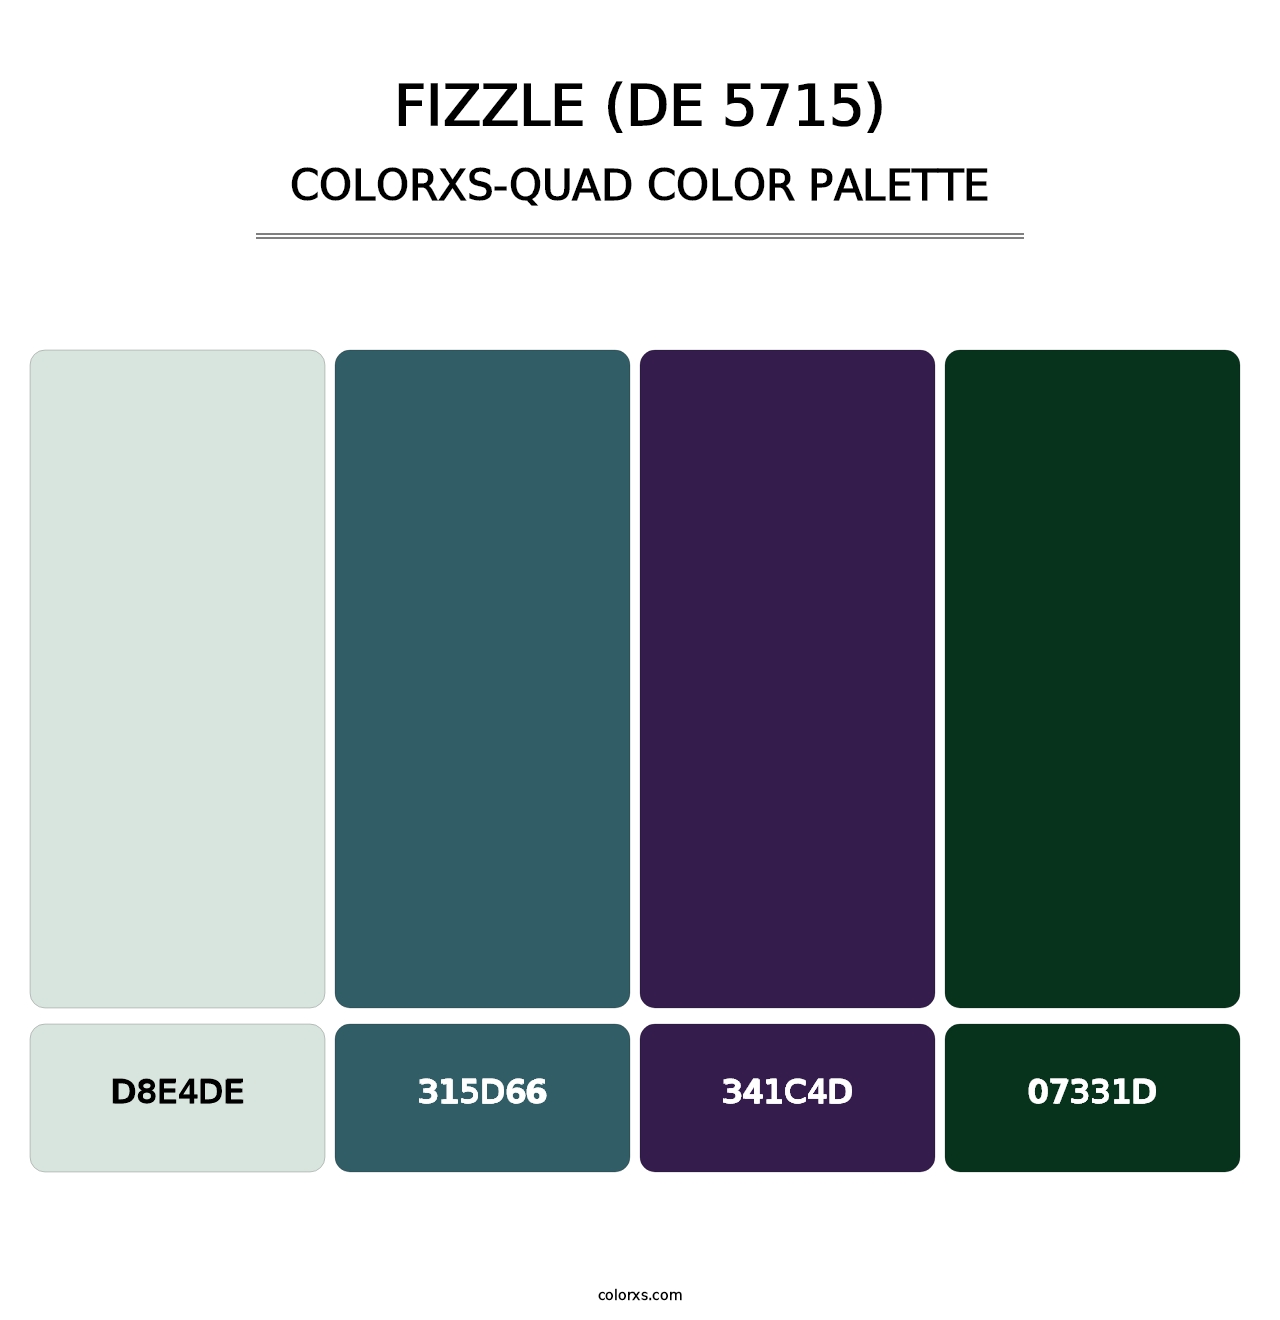 Fizzle (DE 5715) - Colorxs Quad Palette